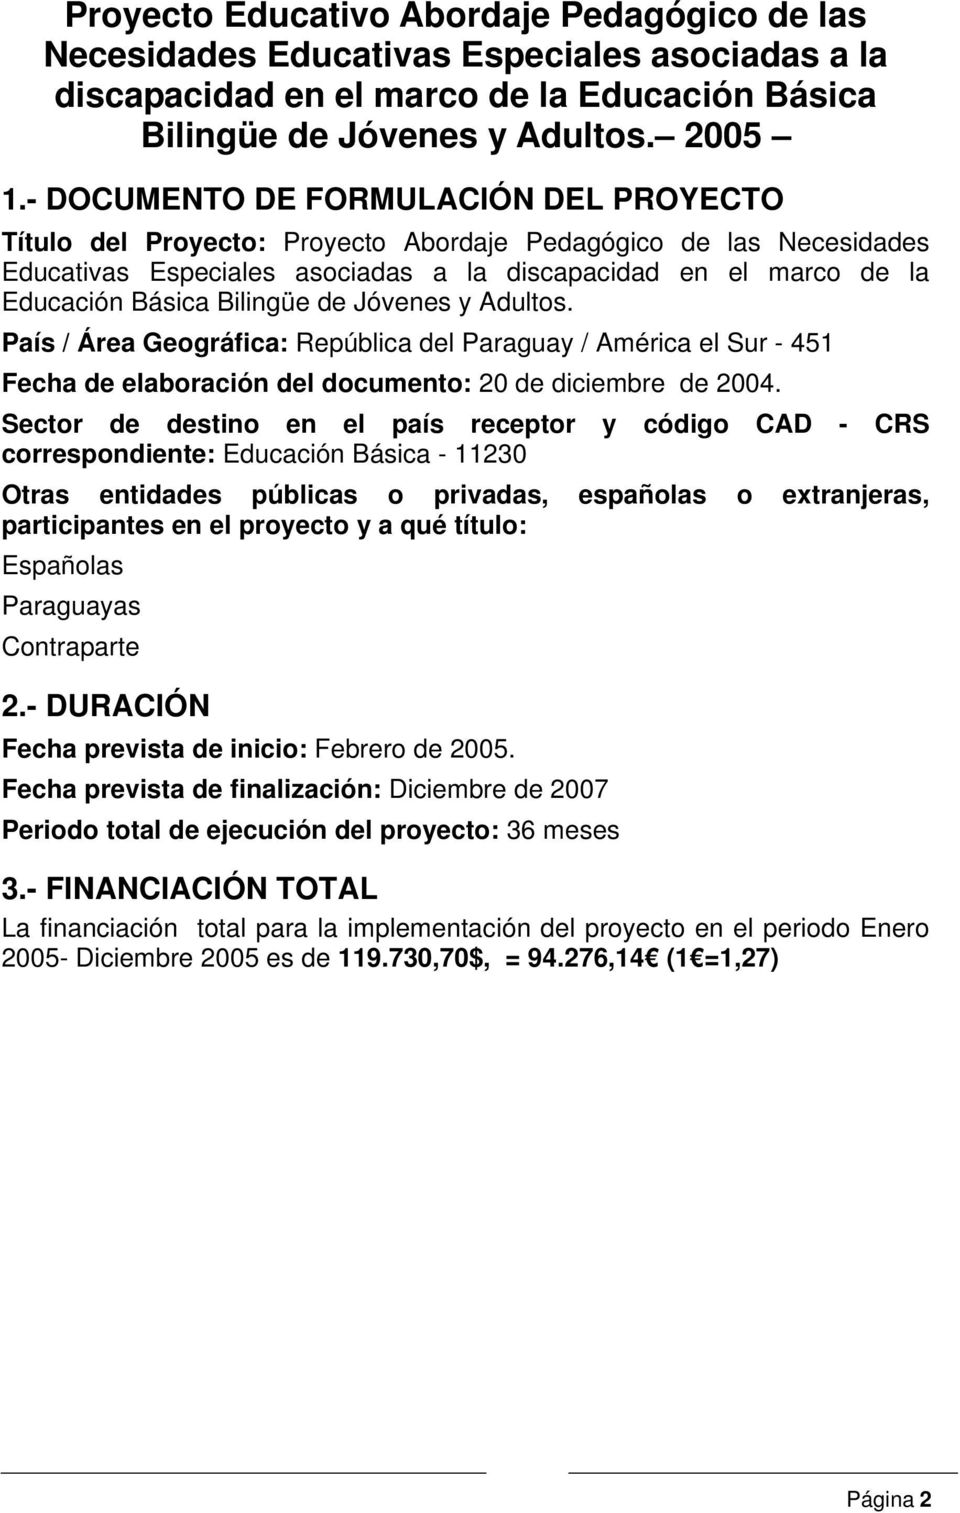 Bilingüe de Jóvenes y Adultos. País / Área Geográfica: República del Paraguay / América el Sur - 451 Fecha de elaboración del documento: 20 de diciembre de 2004.